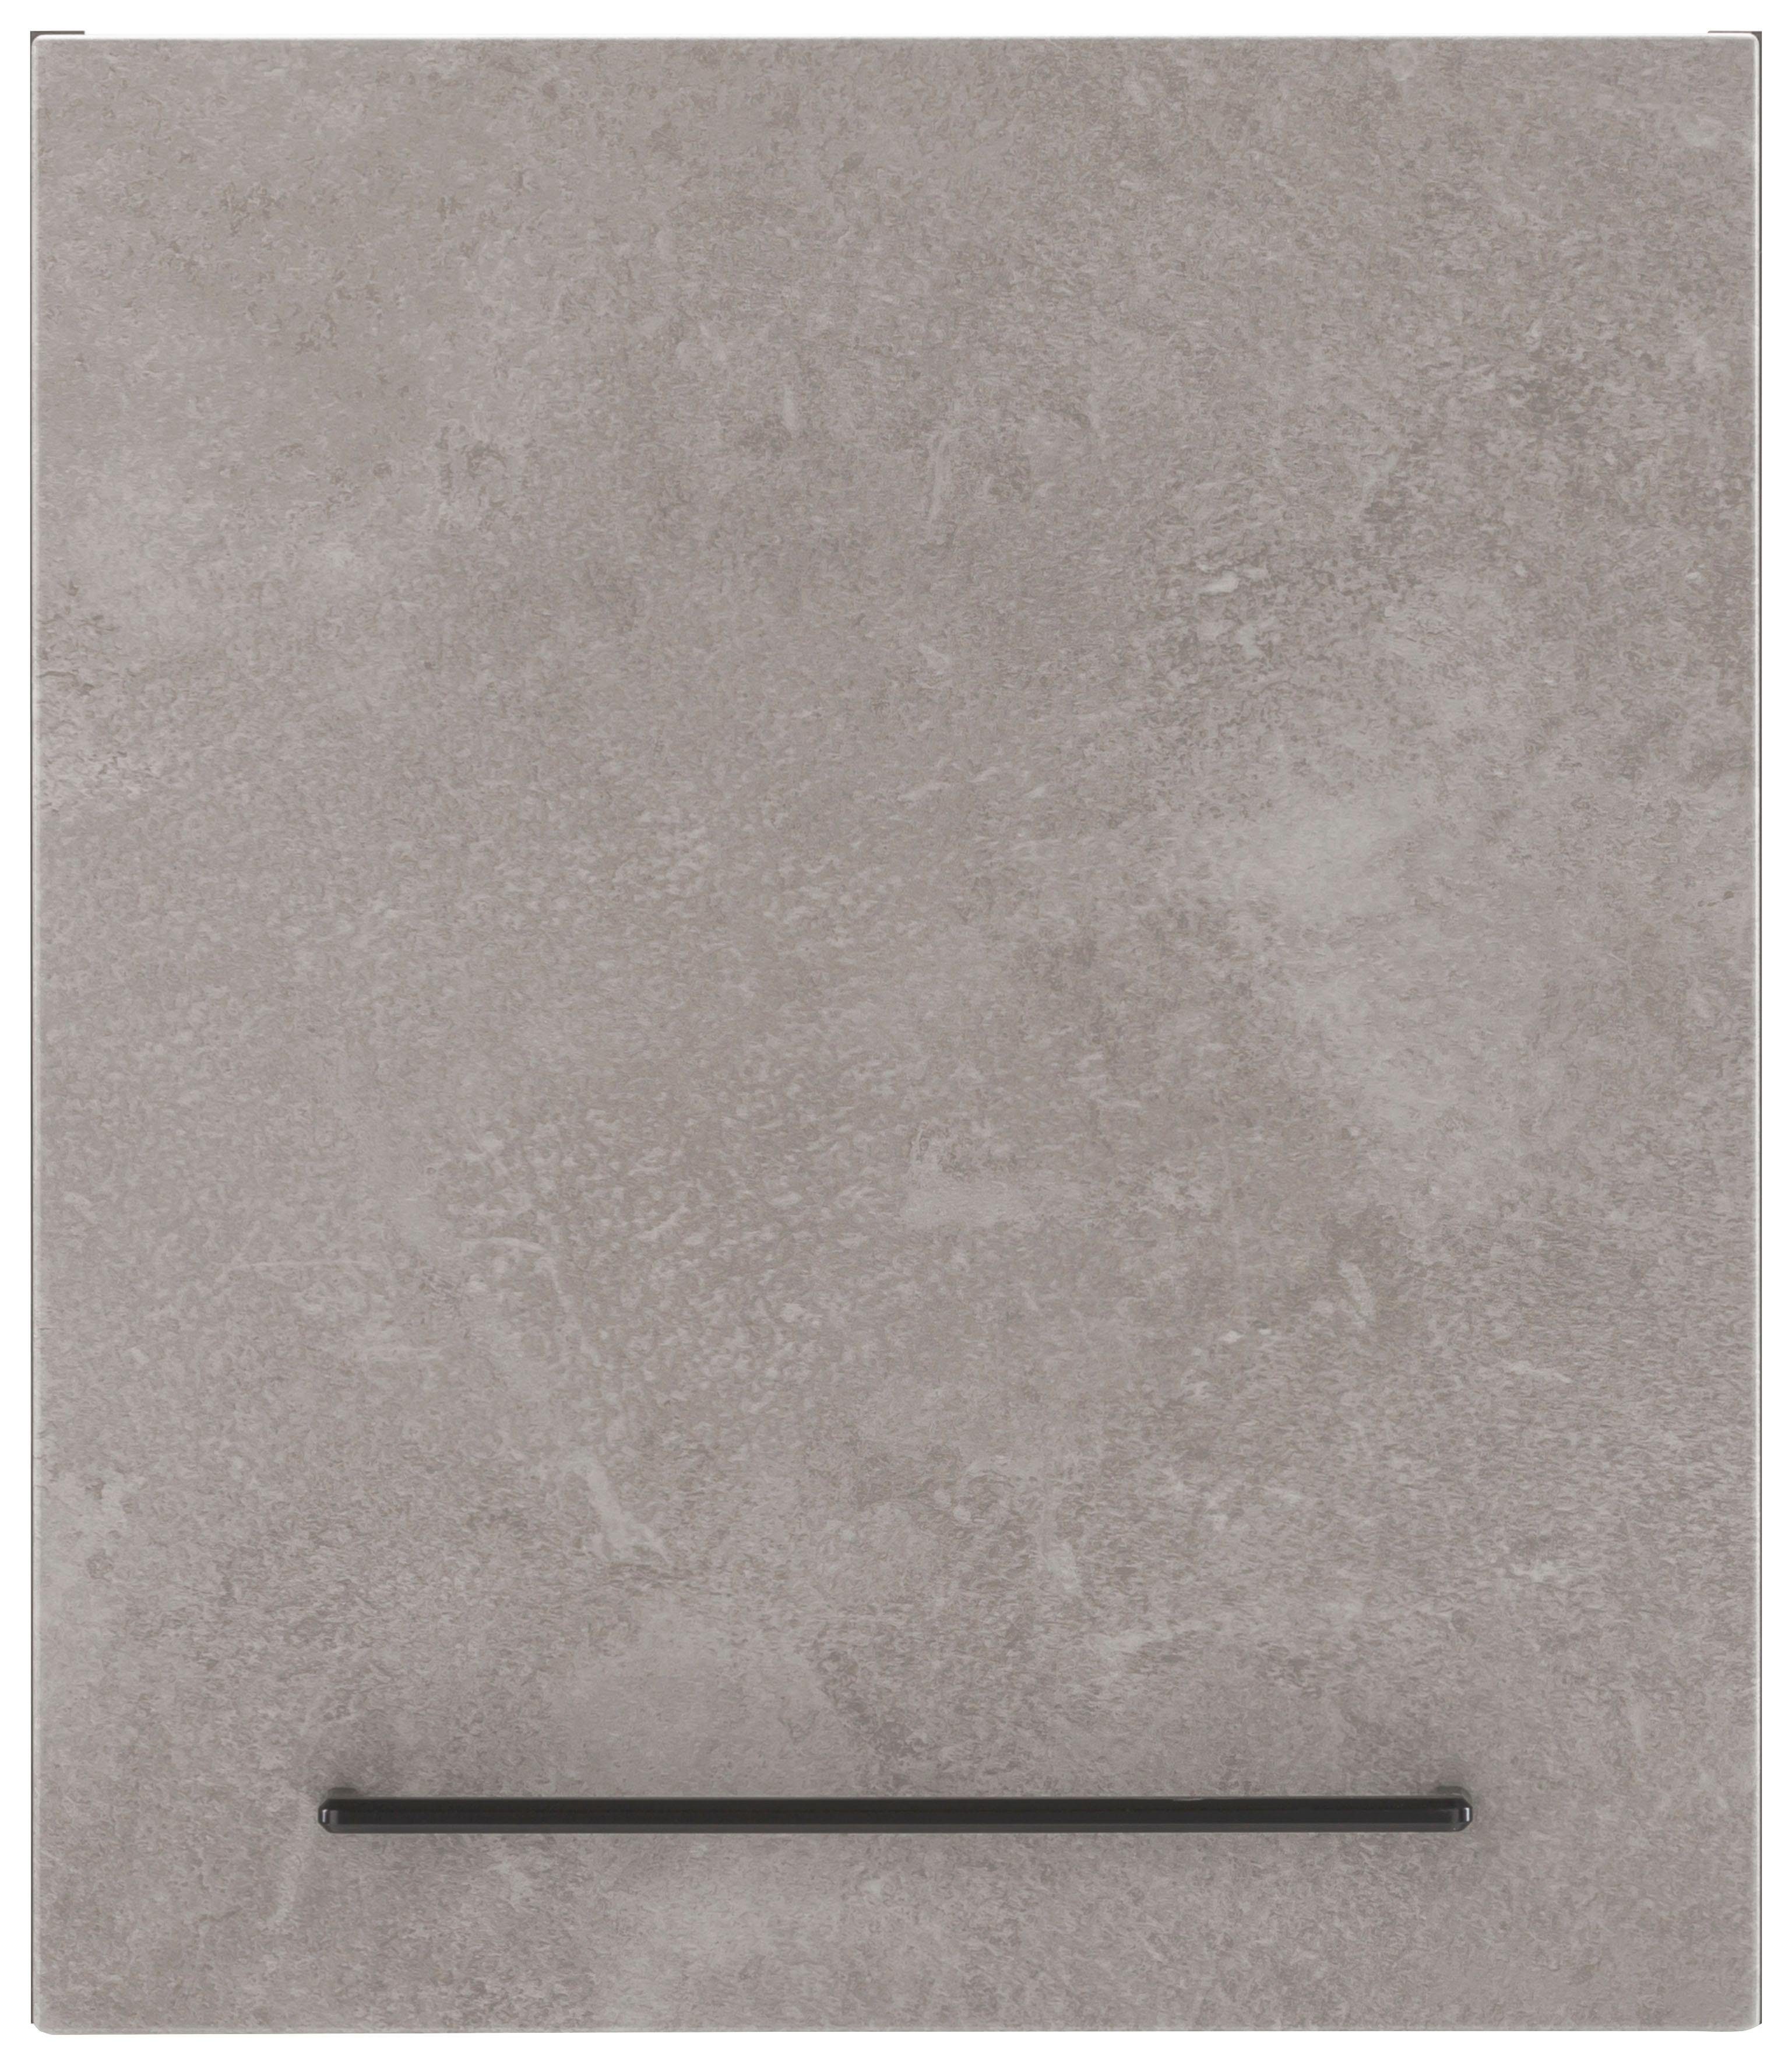 HELD MÖBEL Hängeschrank Tulsa 50 cm breit, 57 cm hoch, 1 Tür, schwarzer Metallgriff, MDF Front betonfarben hell | grafit | Hängeschränke